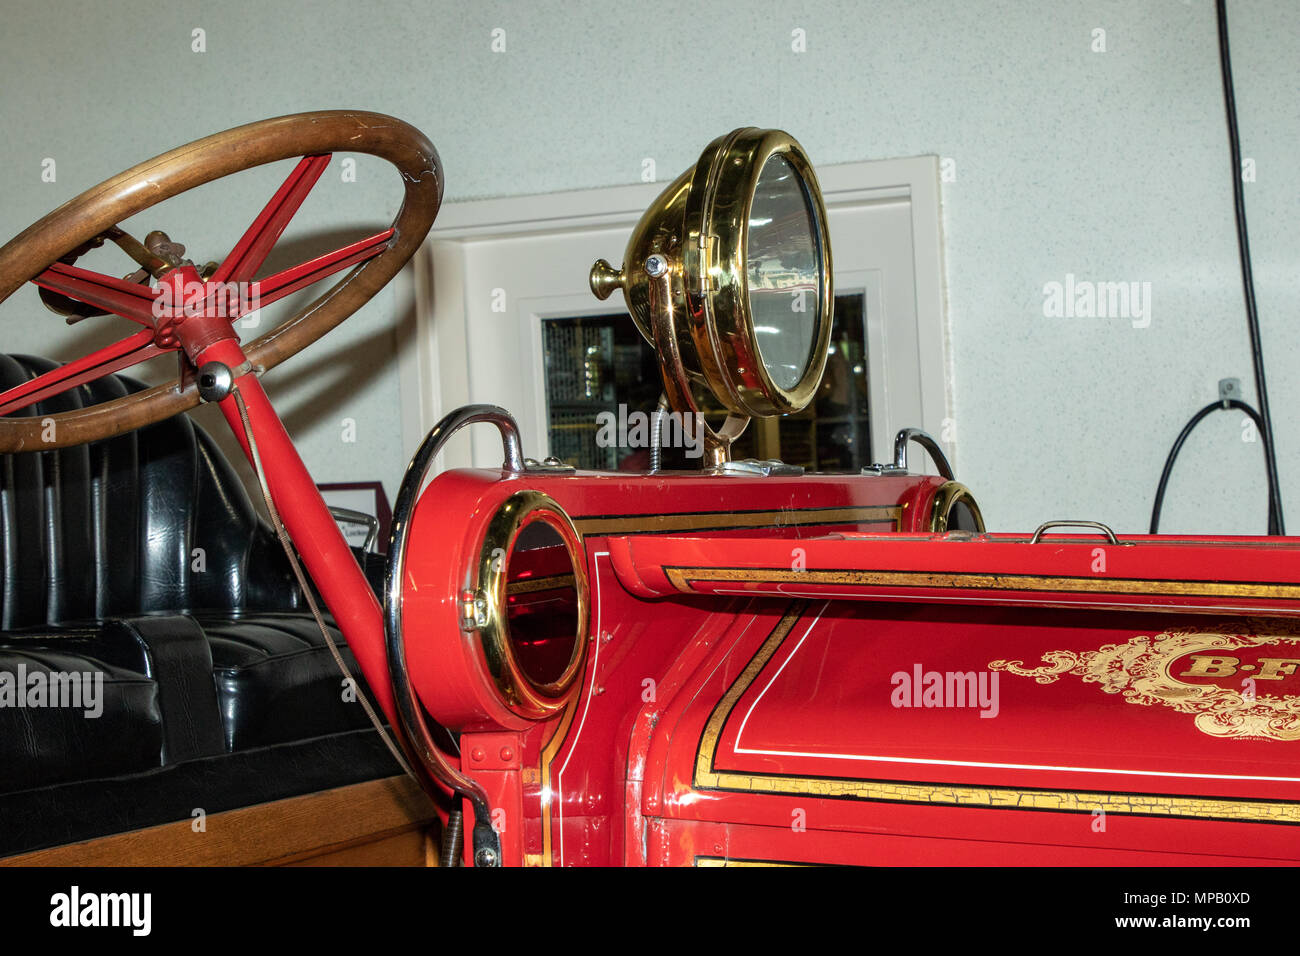 Una fotografia di un 1913 Moreland motore Fire. Questo elemento è alloggiato nel museo di Burbank dei Vigili del Fuoco in Burbank California USA. Foto Stock